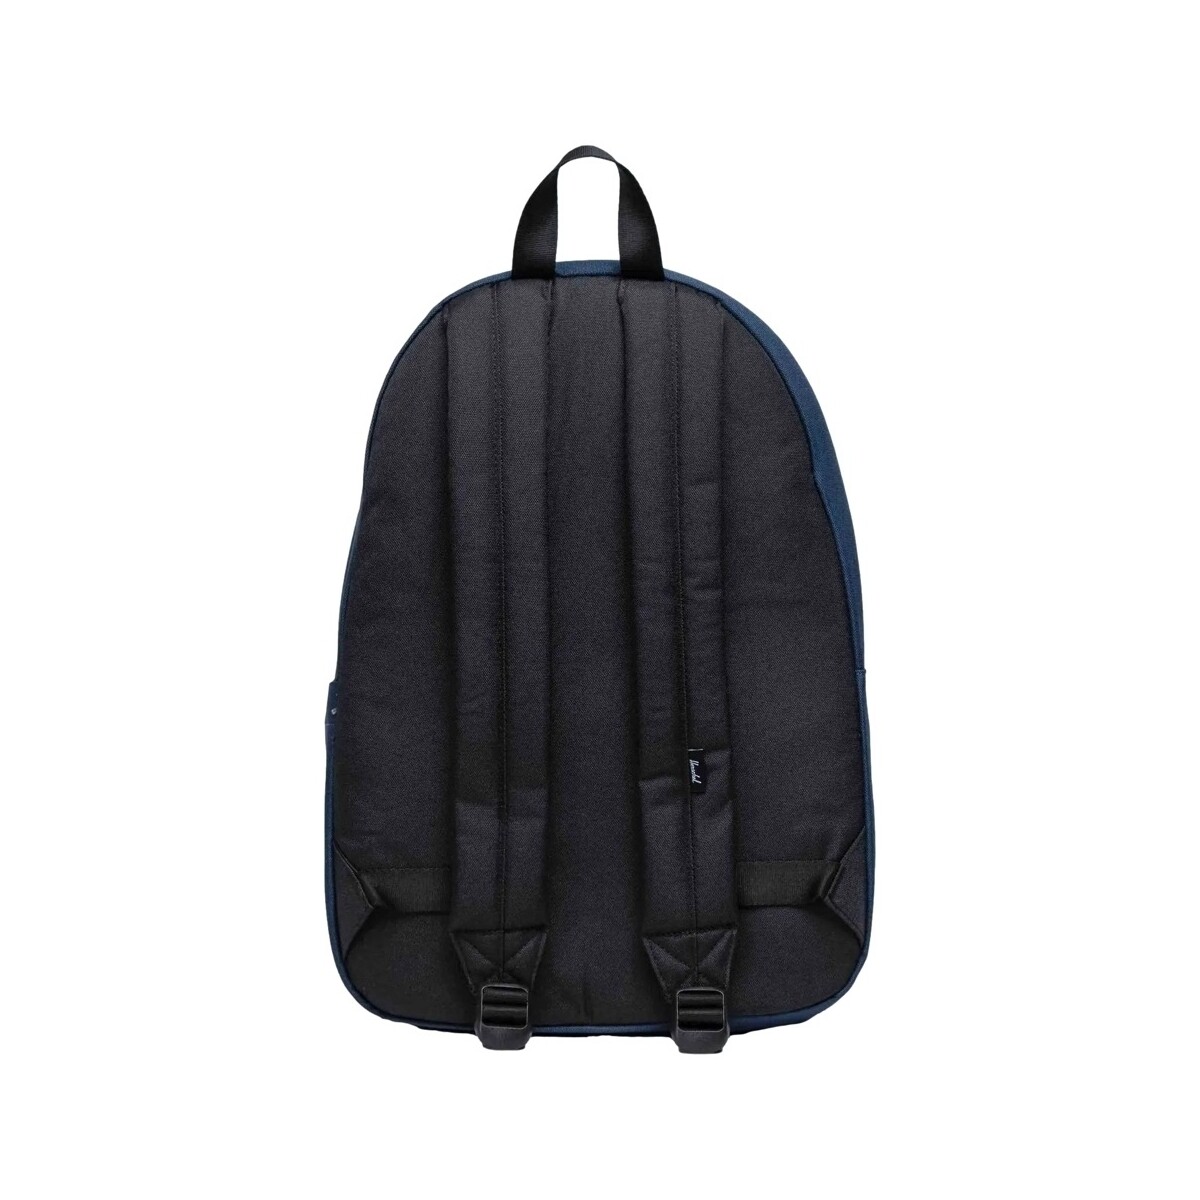 Herschel Bleu Classic XL Backpack - Navy lhaR4plu